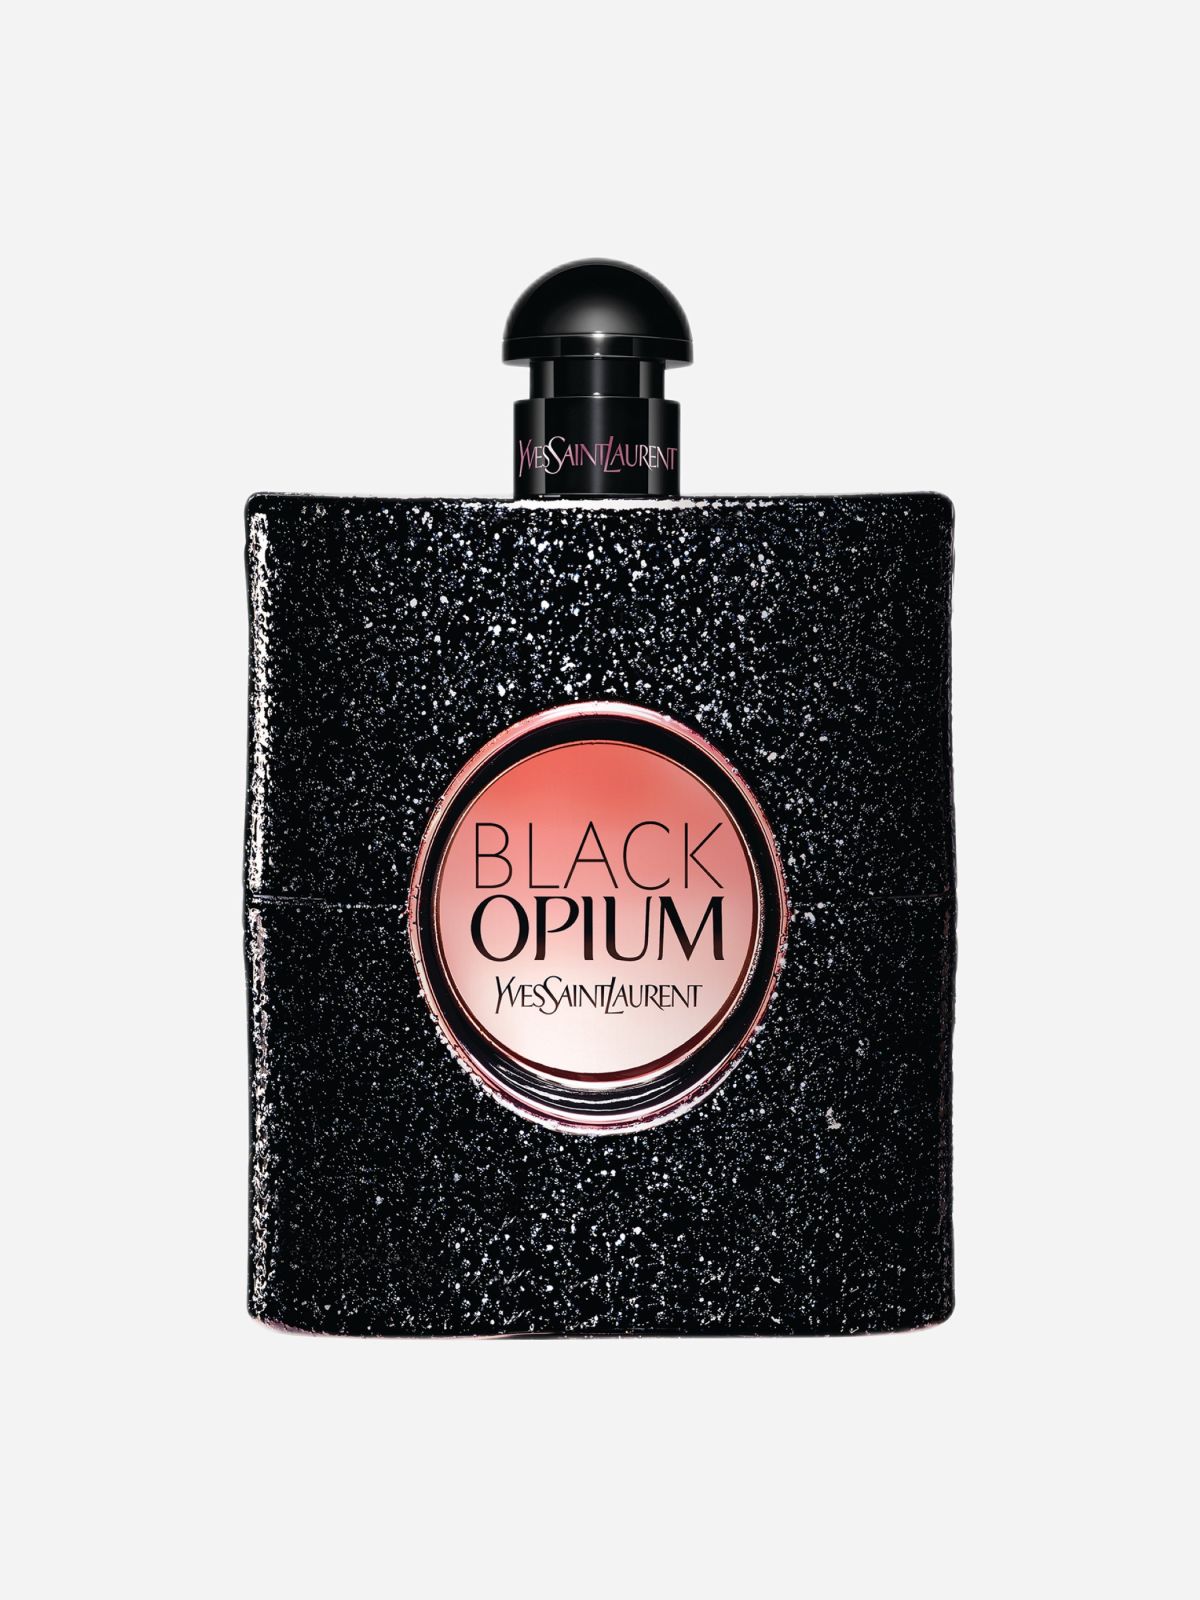  בושם לאישה Black Opium E.D.P של YVES SAINT LAURENT